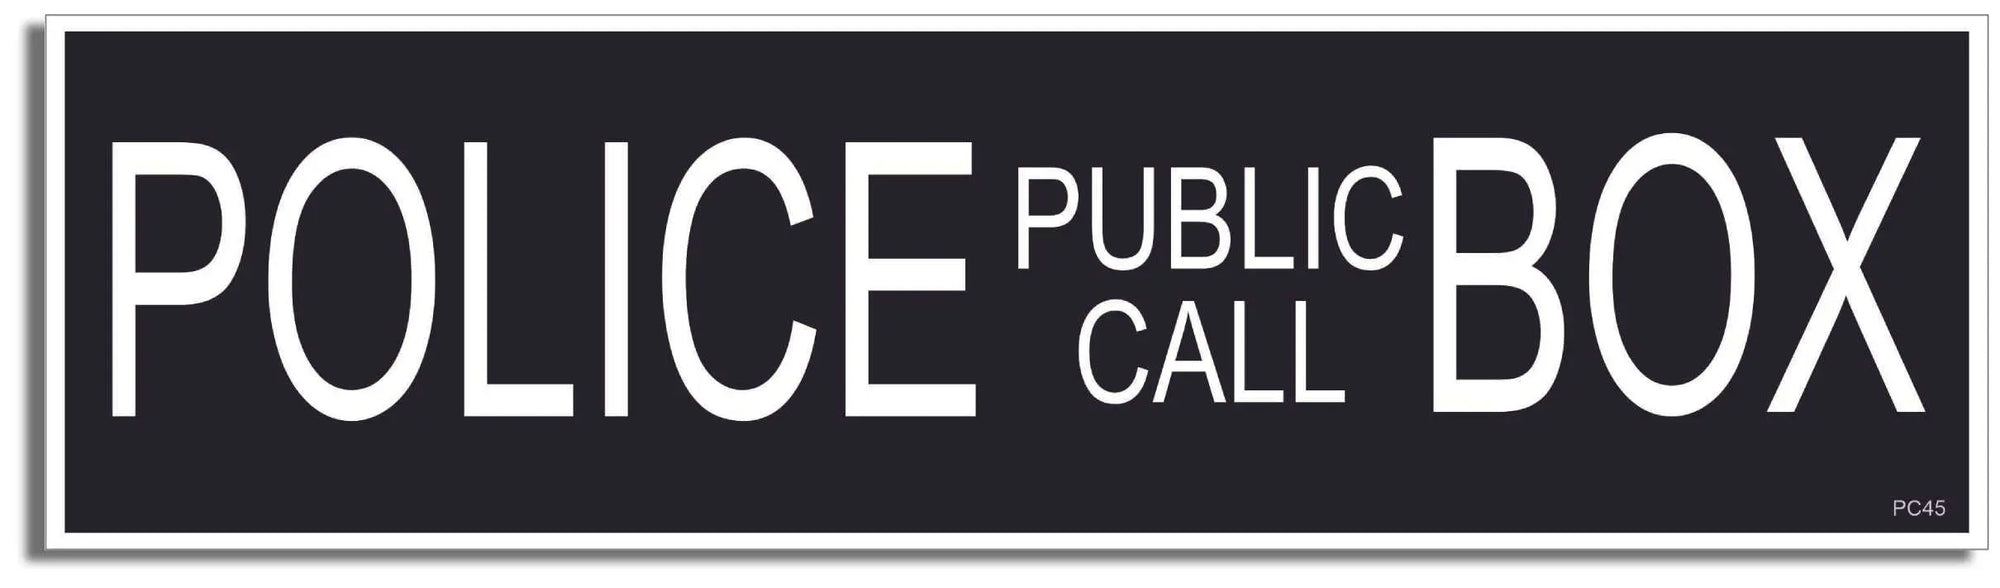 Police Public Call Box (Dr. Who) - XL Funny Bumper Sticker